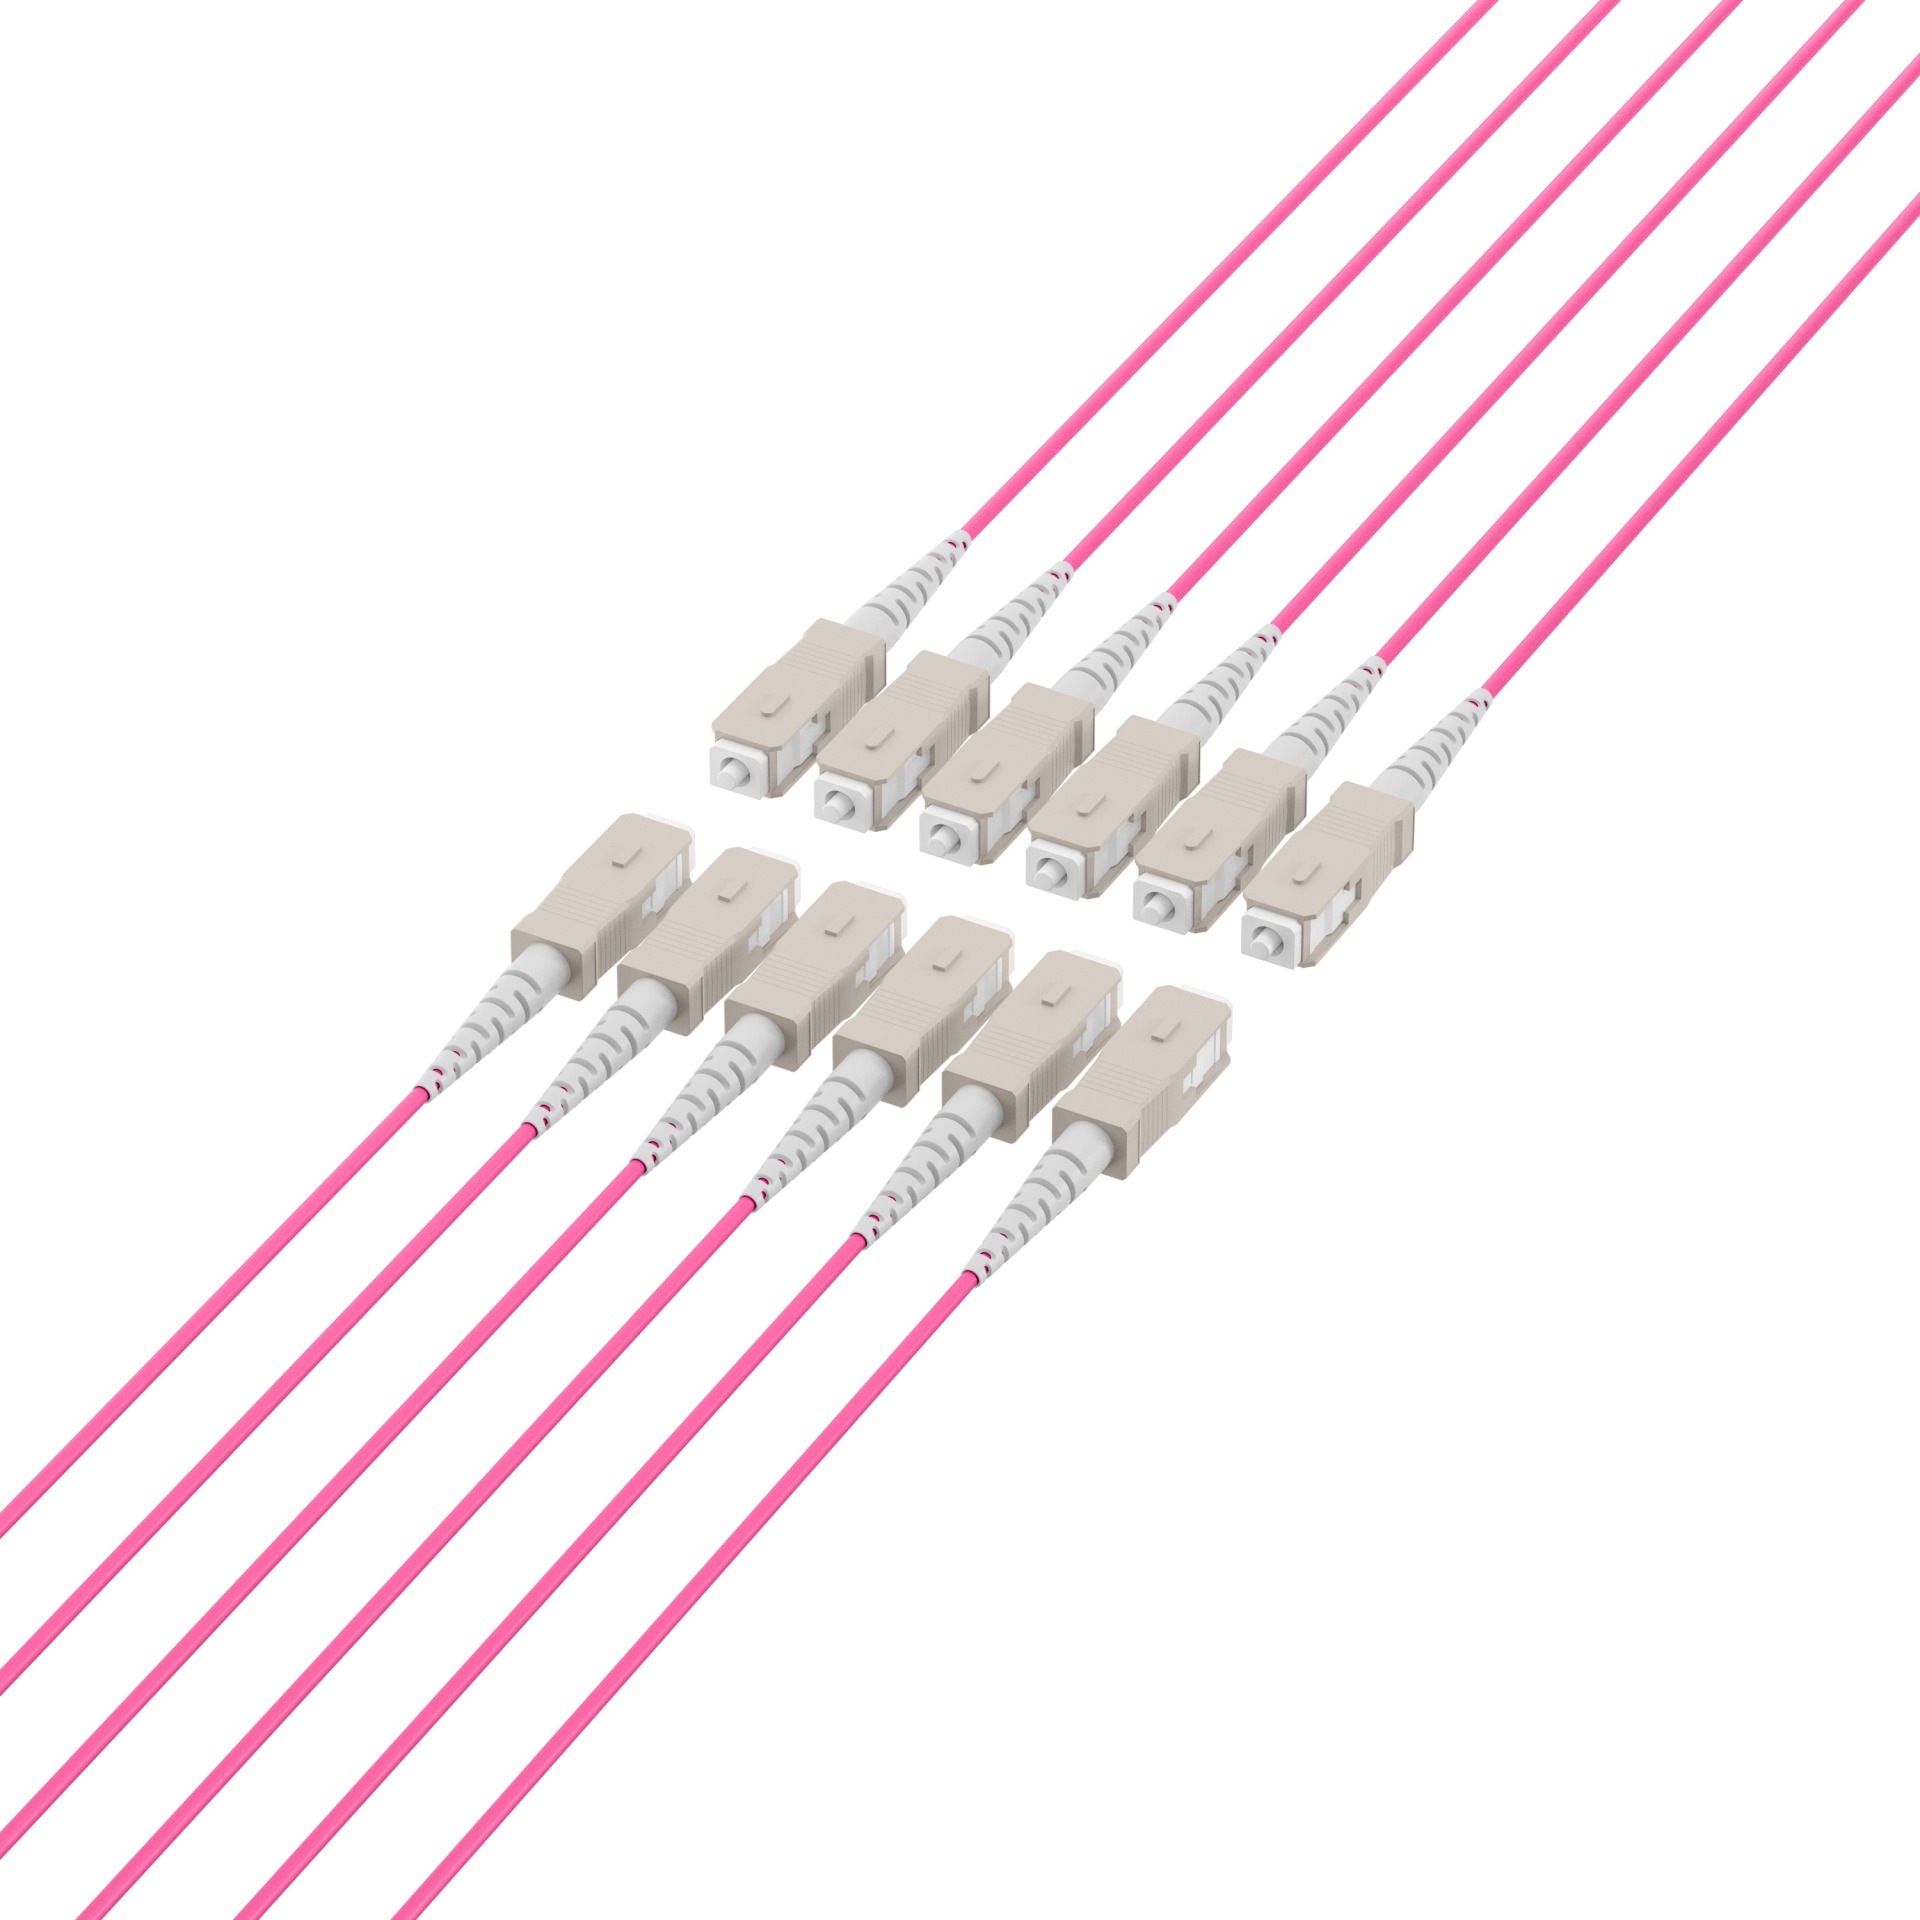 Trunk cable U-DQ(ZN)BH OM4 12G (1x12) SC-SC,110m Dca LSZH